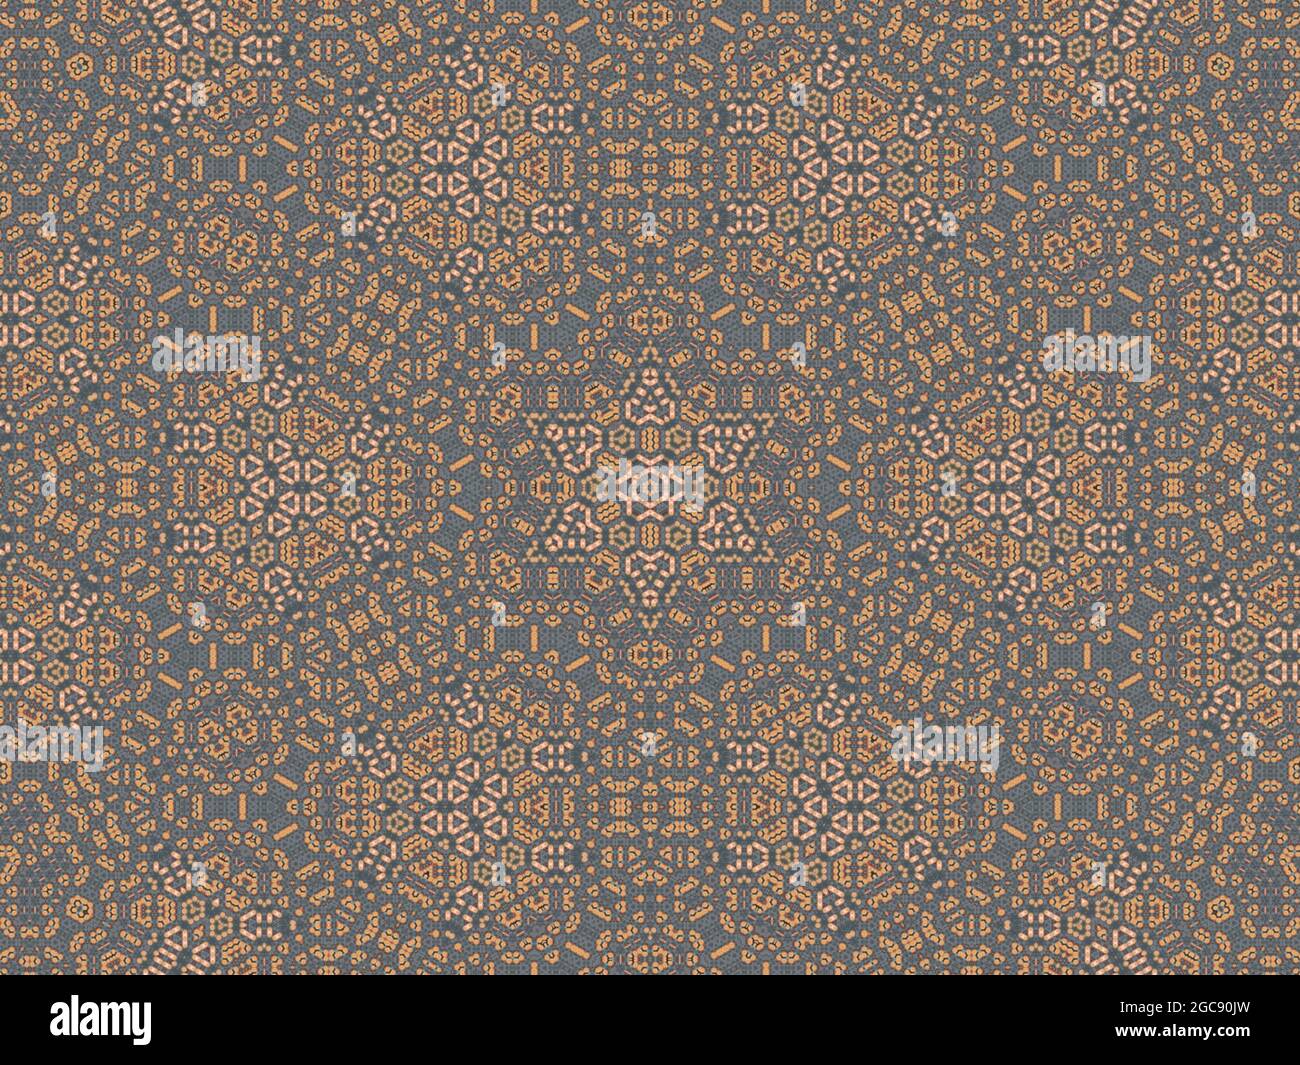 Persian style digital patterns. Islamic  (Arablc) style kaleidoscope patterns. REtro geometric Aztec like patterns. Ornate energy mandala. Stock Photo